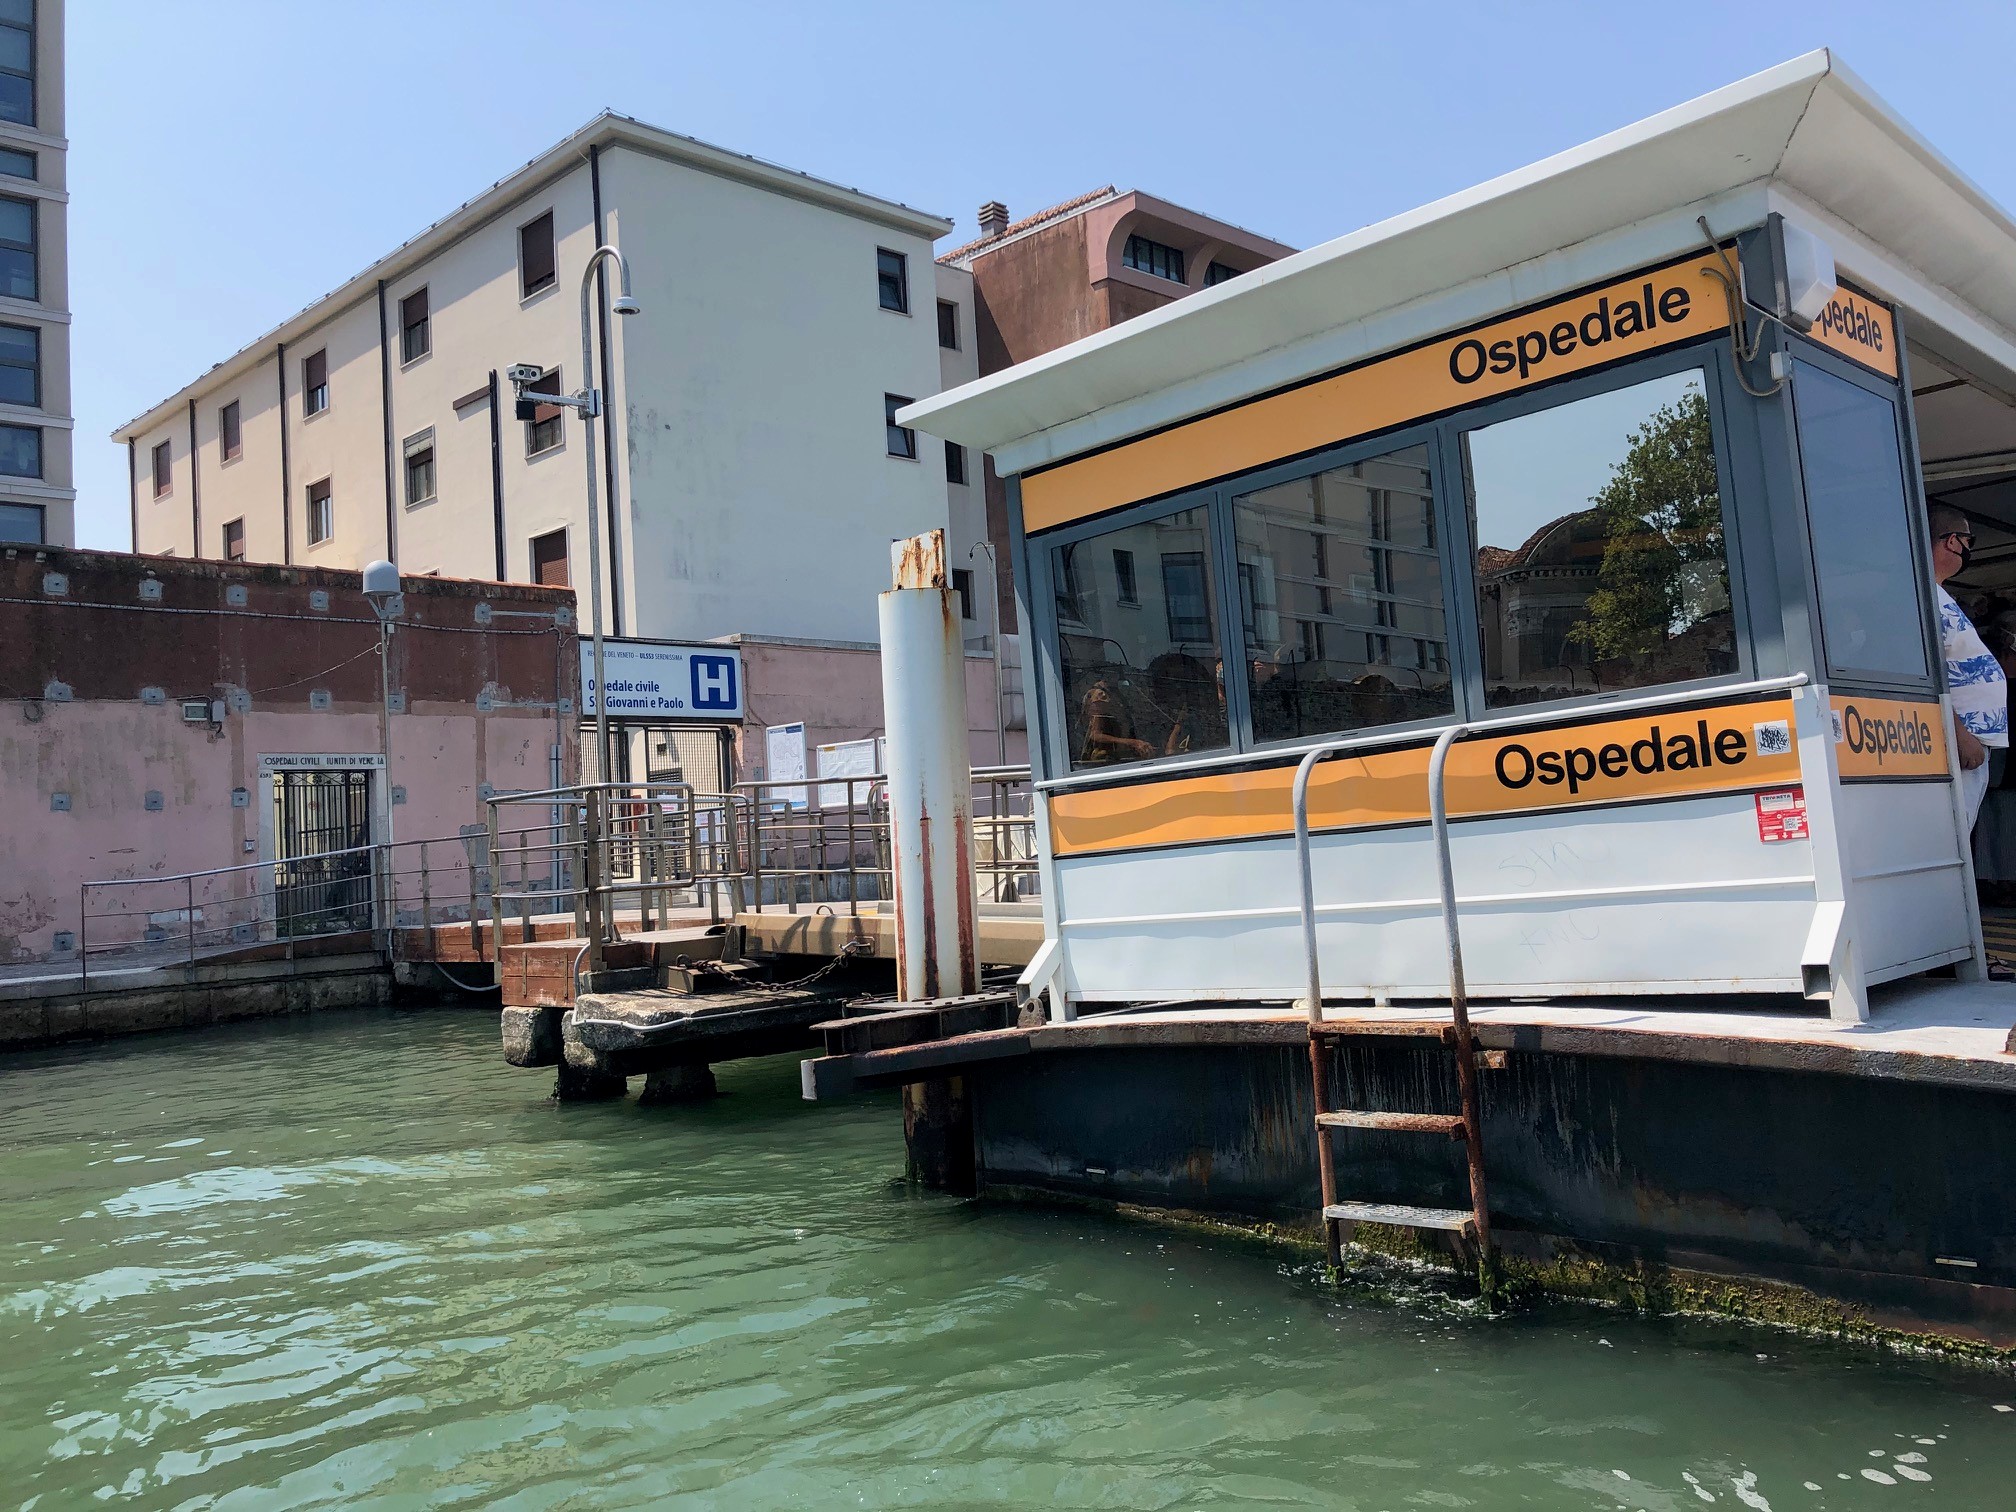 Venezia - Ospedale - lagoon entrance